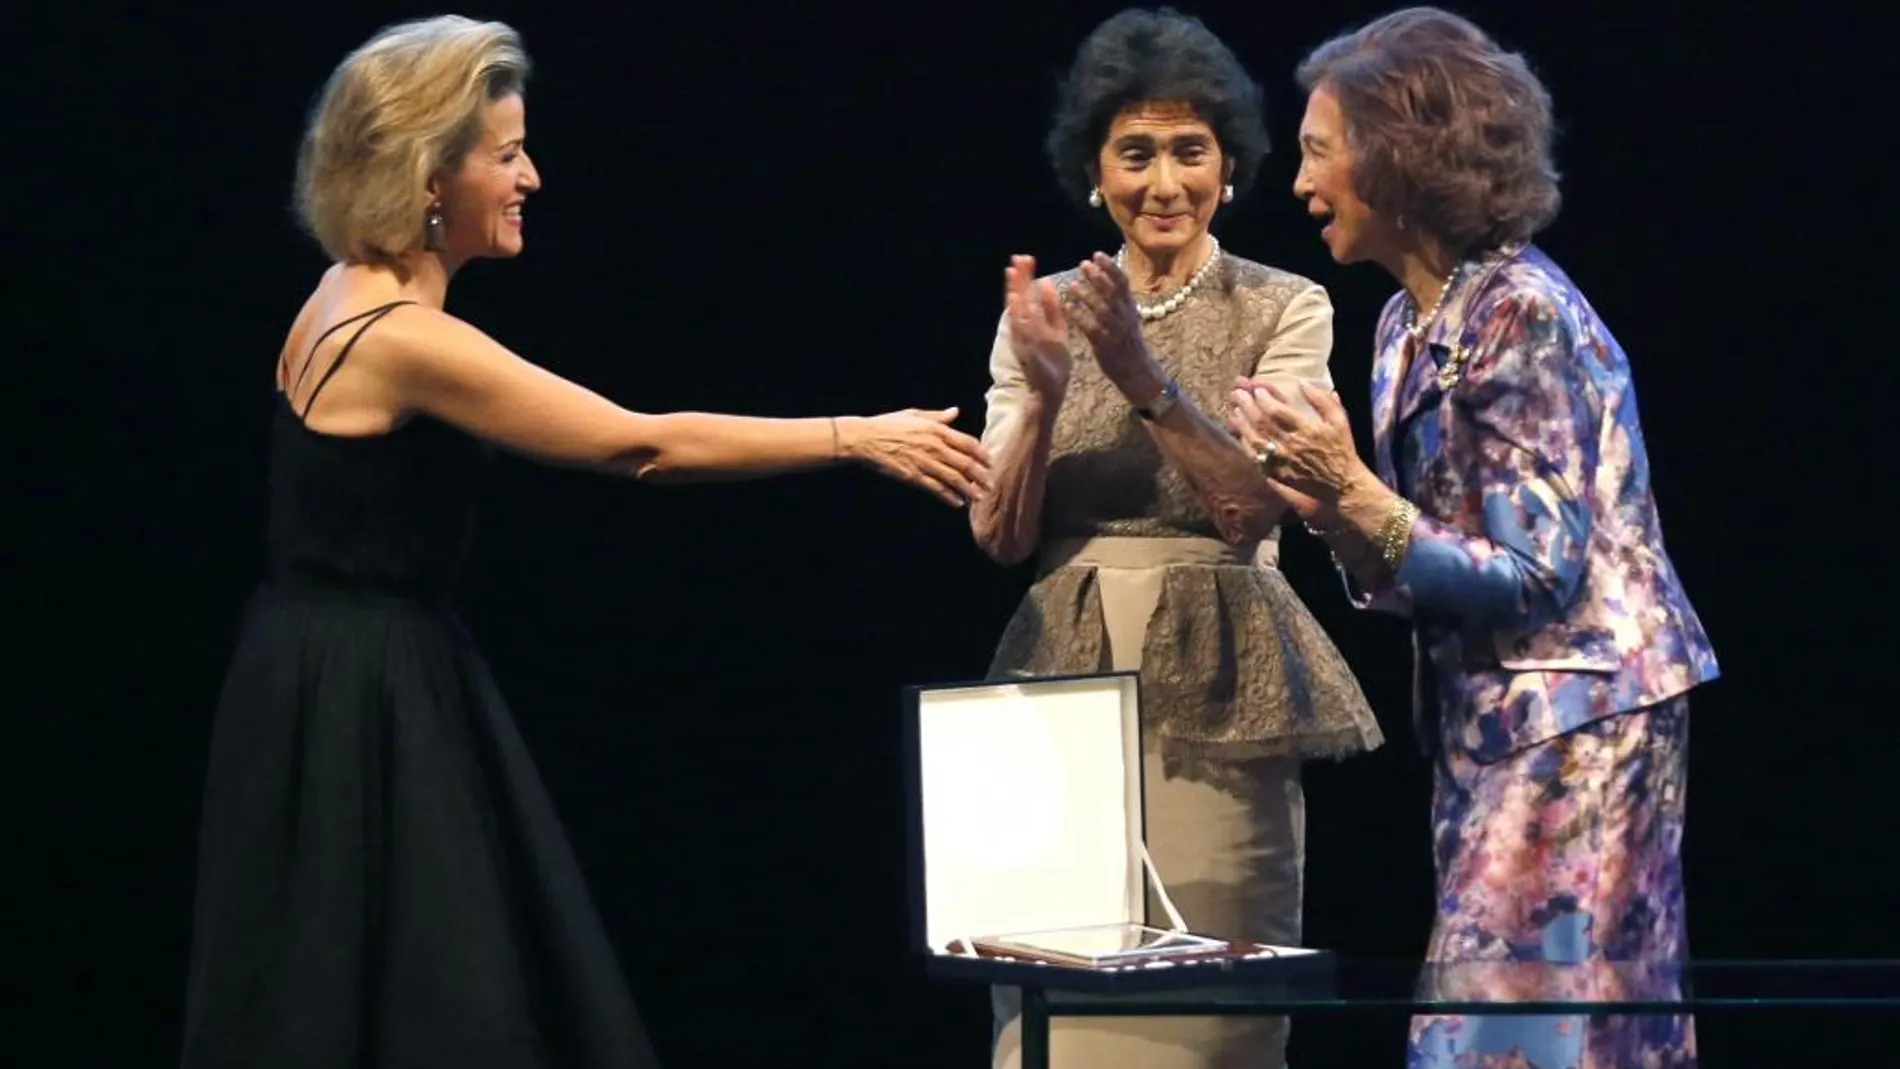 La Reina Sofía, acompañada por la presidenta de la Escuela Superior de Música Reina Sofía, Paloma O´Shea, en la entrega del Premio Yehudi Menuhin a la Integración de las Artes y la Educación de 2016 a la violinista alemana Anne-Sophie Mutter